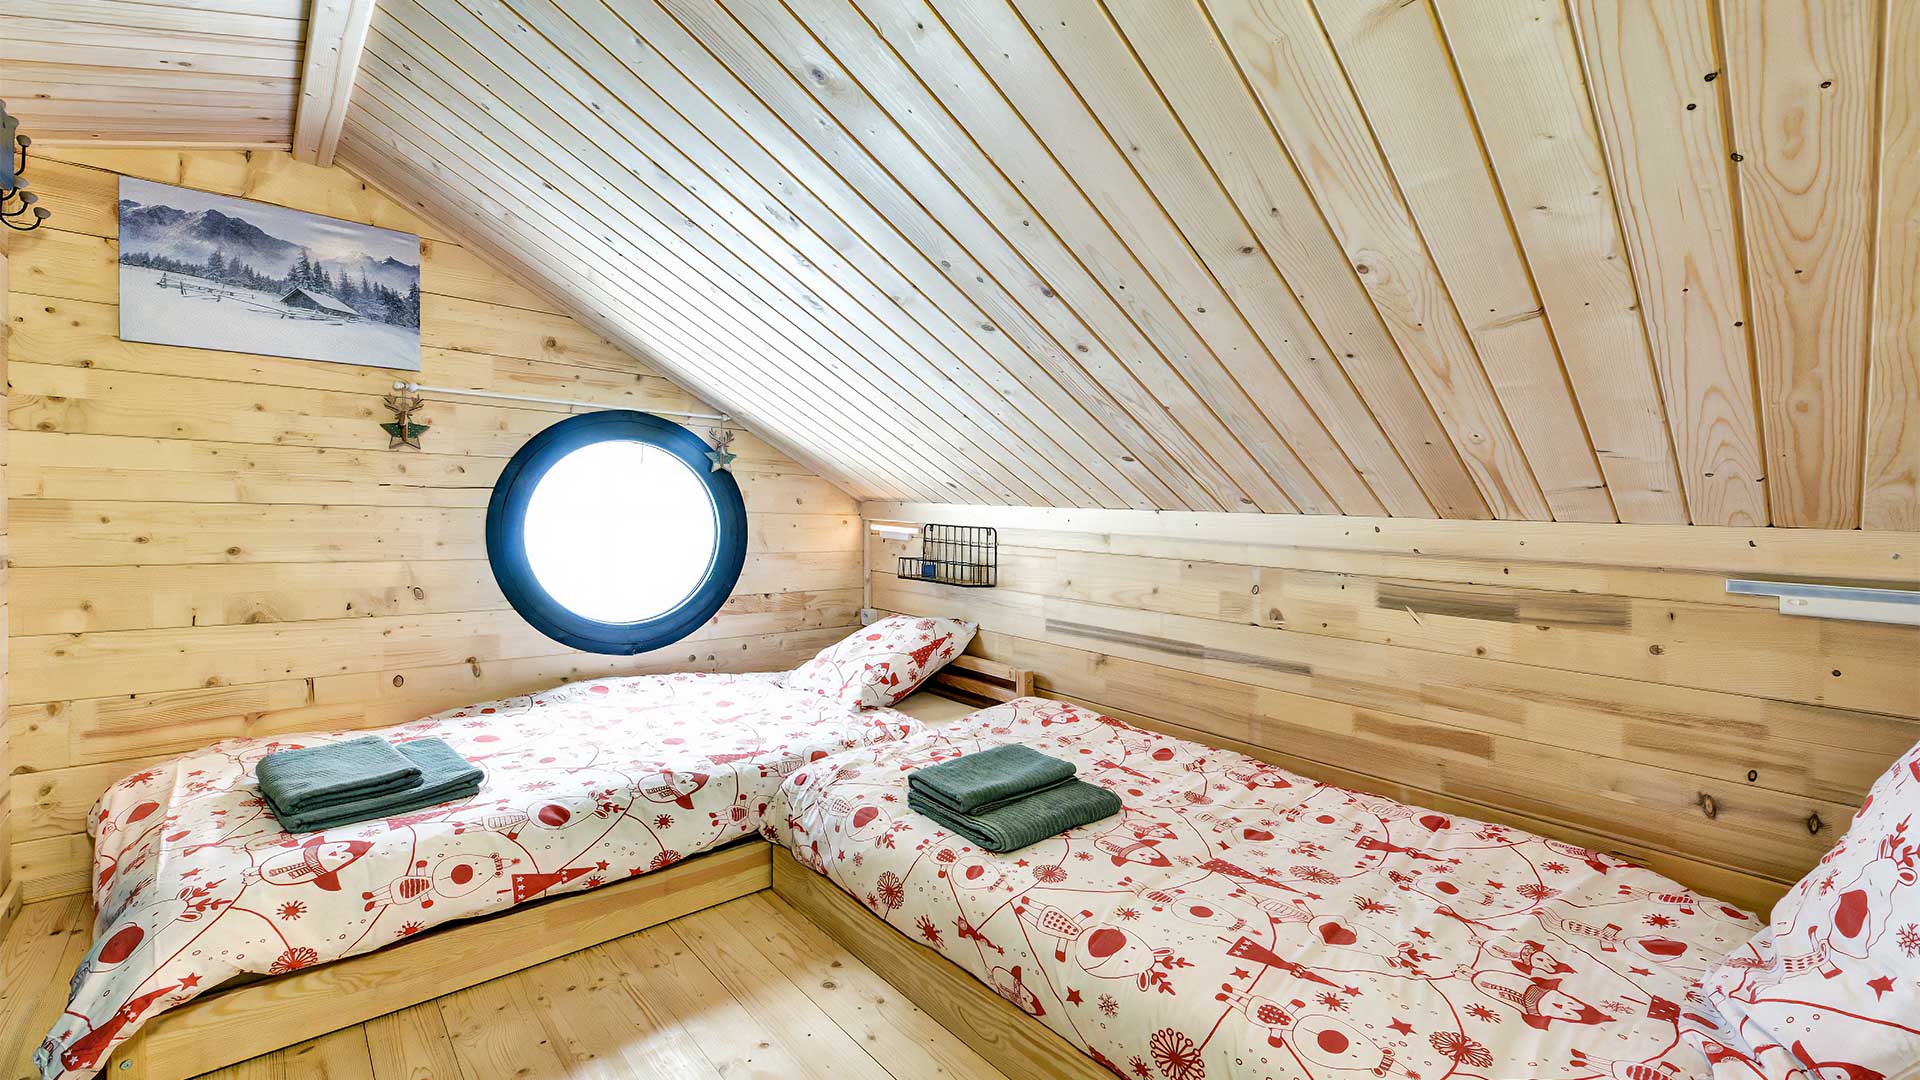 Chalet Duplex 6 personnes : Chambre deux lits simples - Location de chalet à Briançon